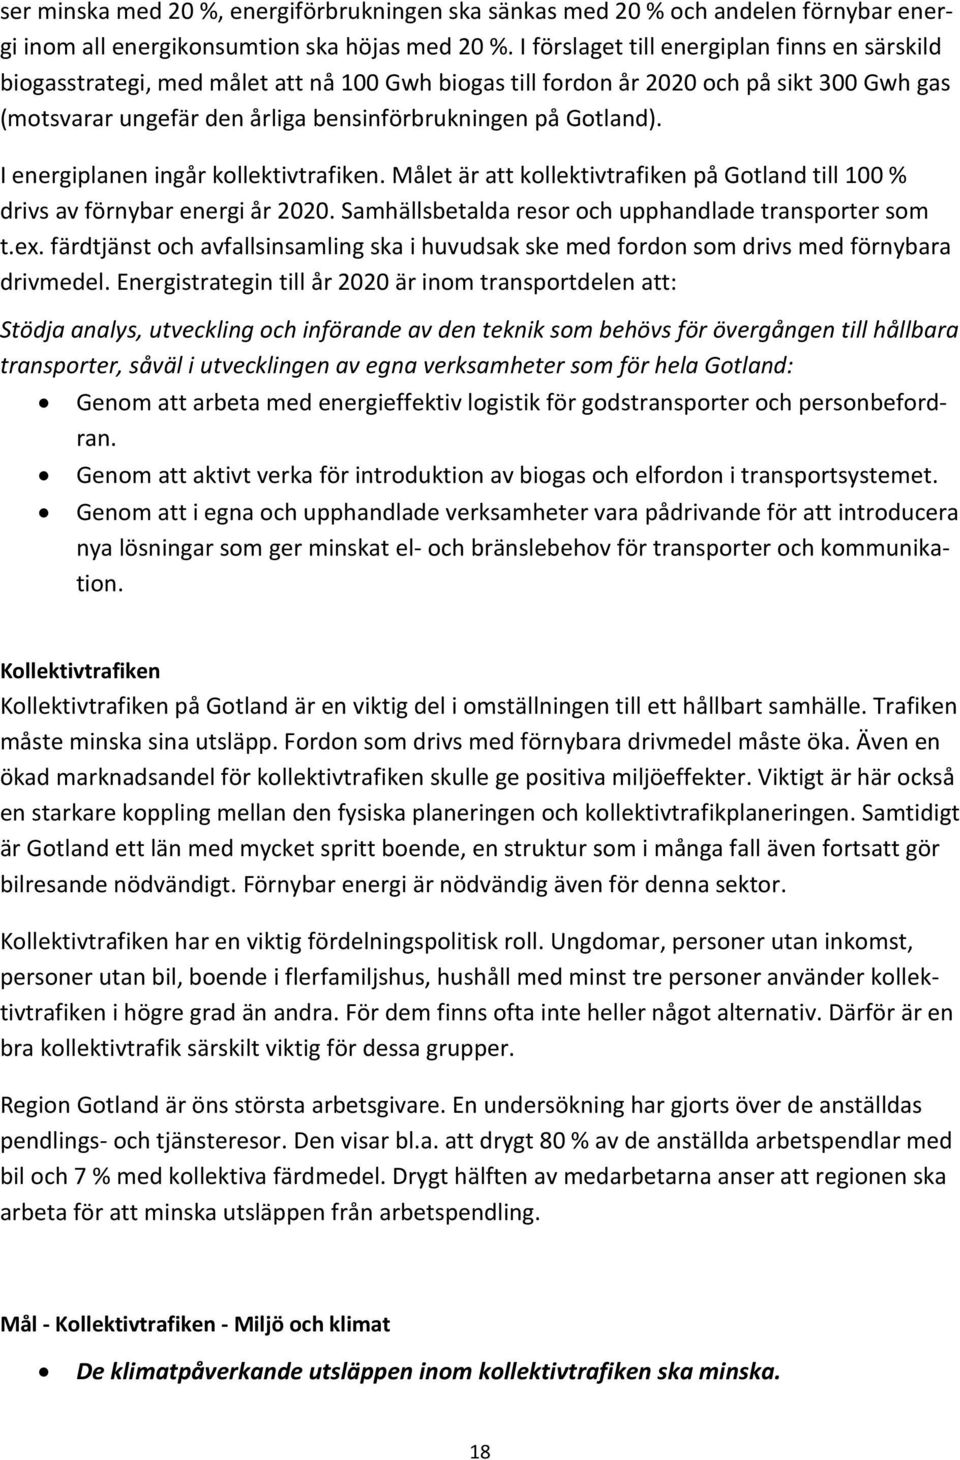 I energiplanen ingår kollektivtrafiken. Målet är att kollektivtrafiken på Gotland till 100 % drivs av förnybar energi år 2020. Samhällsbetalda resor och upphandlade transporter som t.ex.